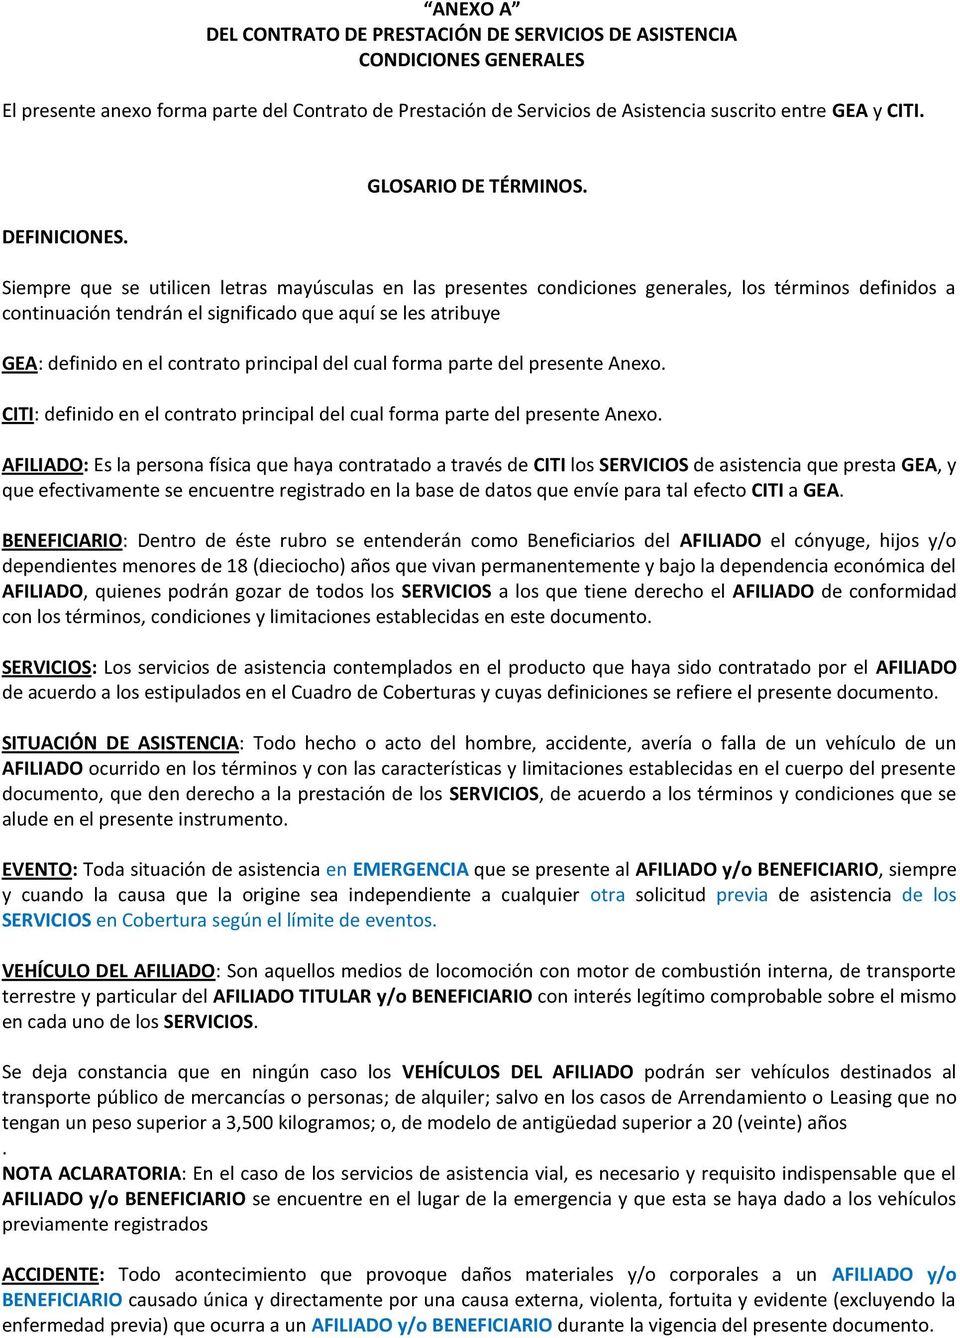 ANEXO A DEL CONTRATO DE PRESTACIÓN DE SERVICIOS DE ASISTENCIA CONDICIONES  GENERALES - PDF Descargar libre